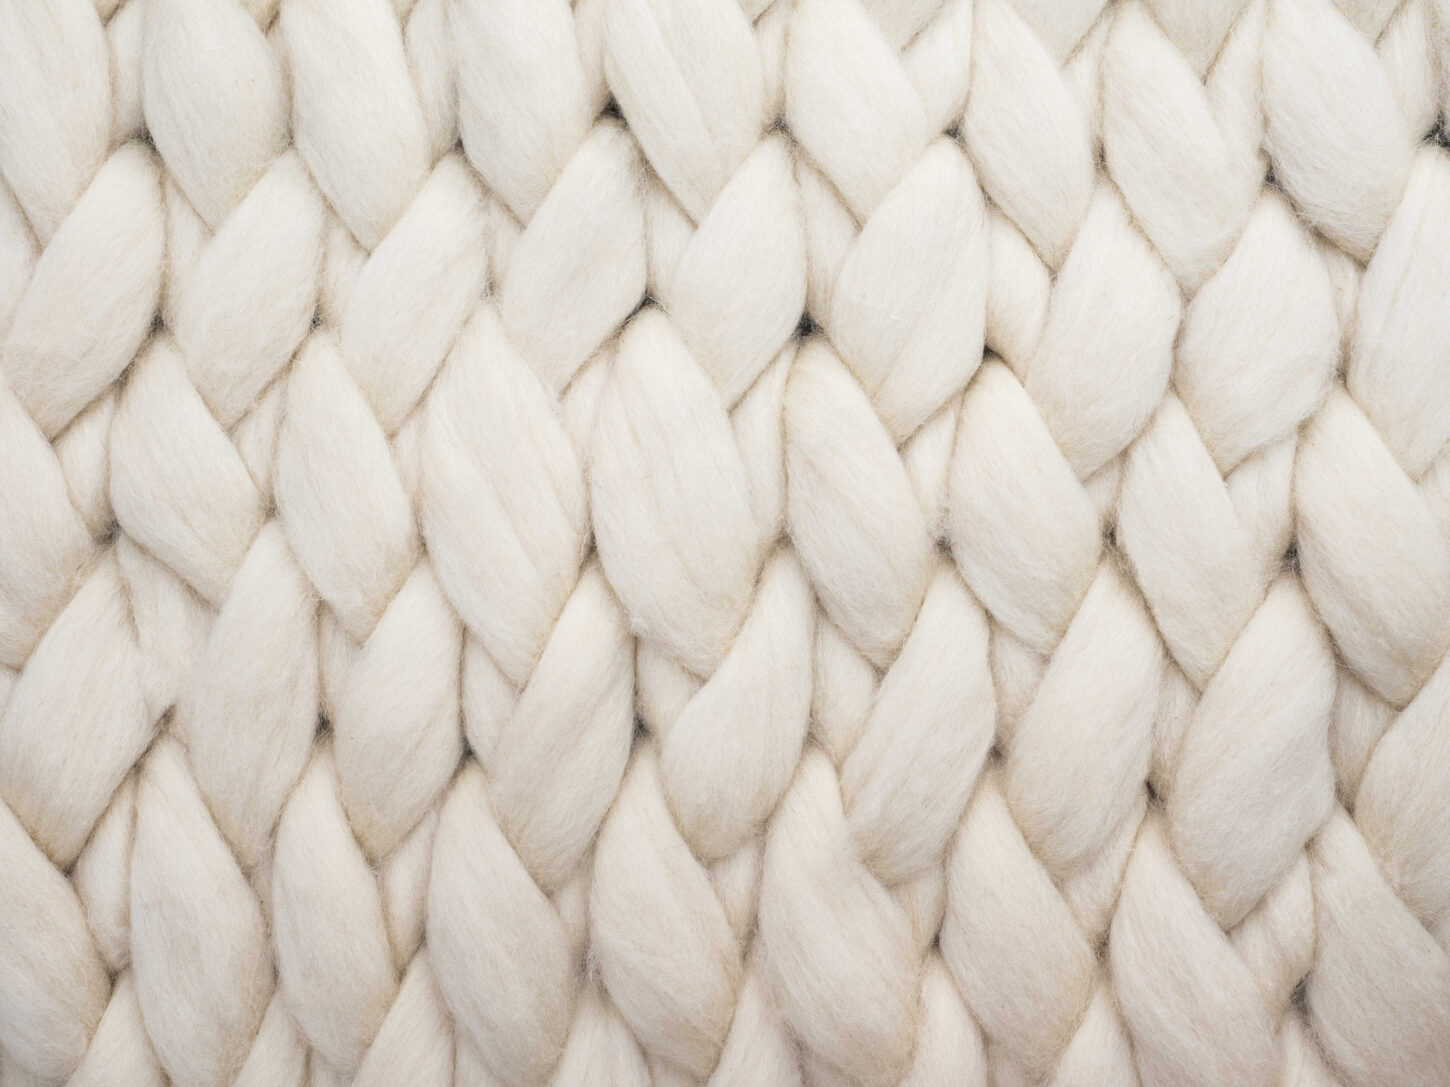 Wool Cotton, ein Raw Yarn von Spoerry 1866, hier weiss geflochten.